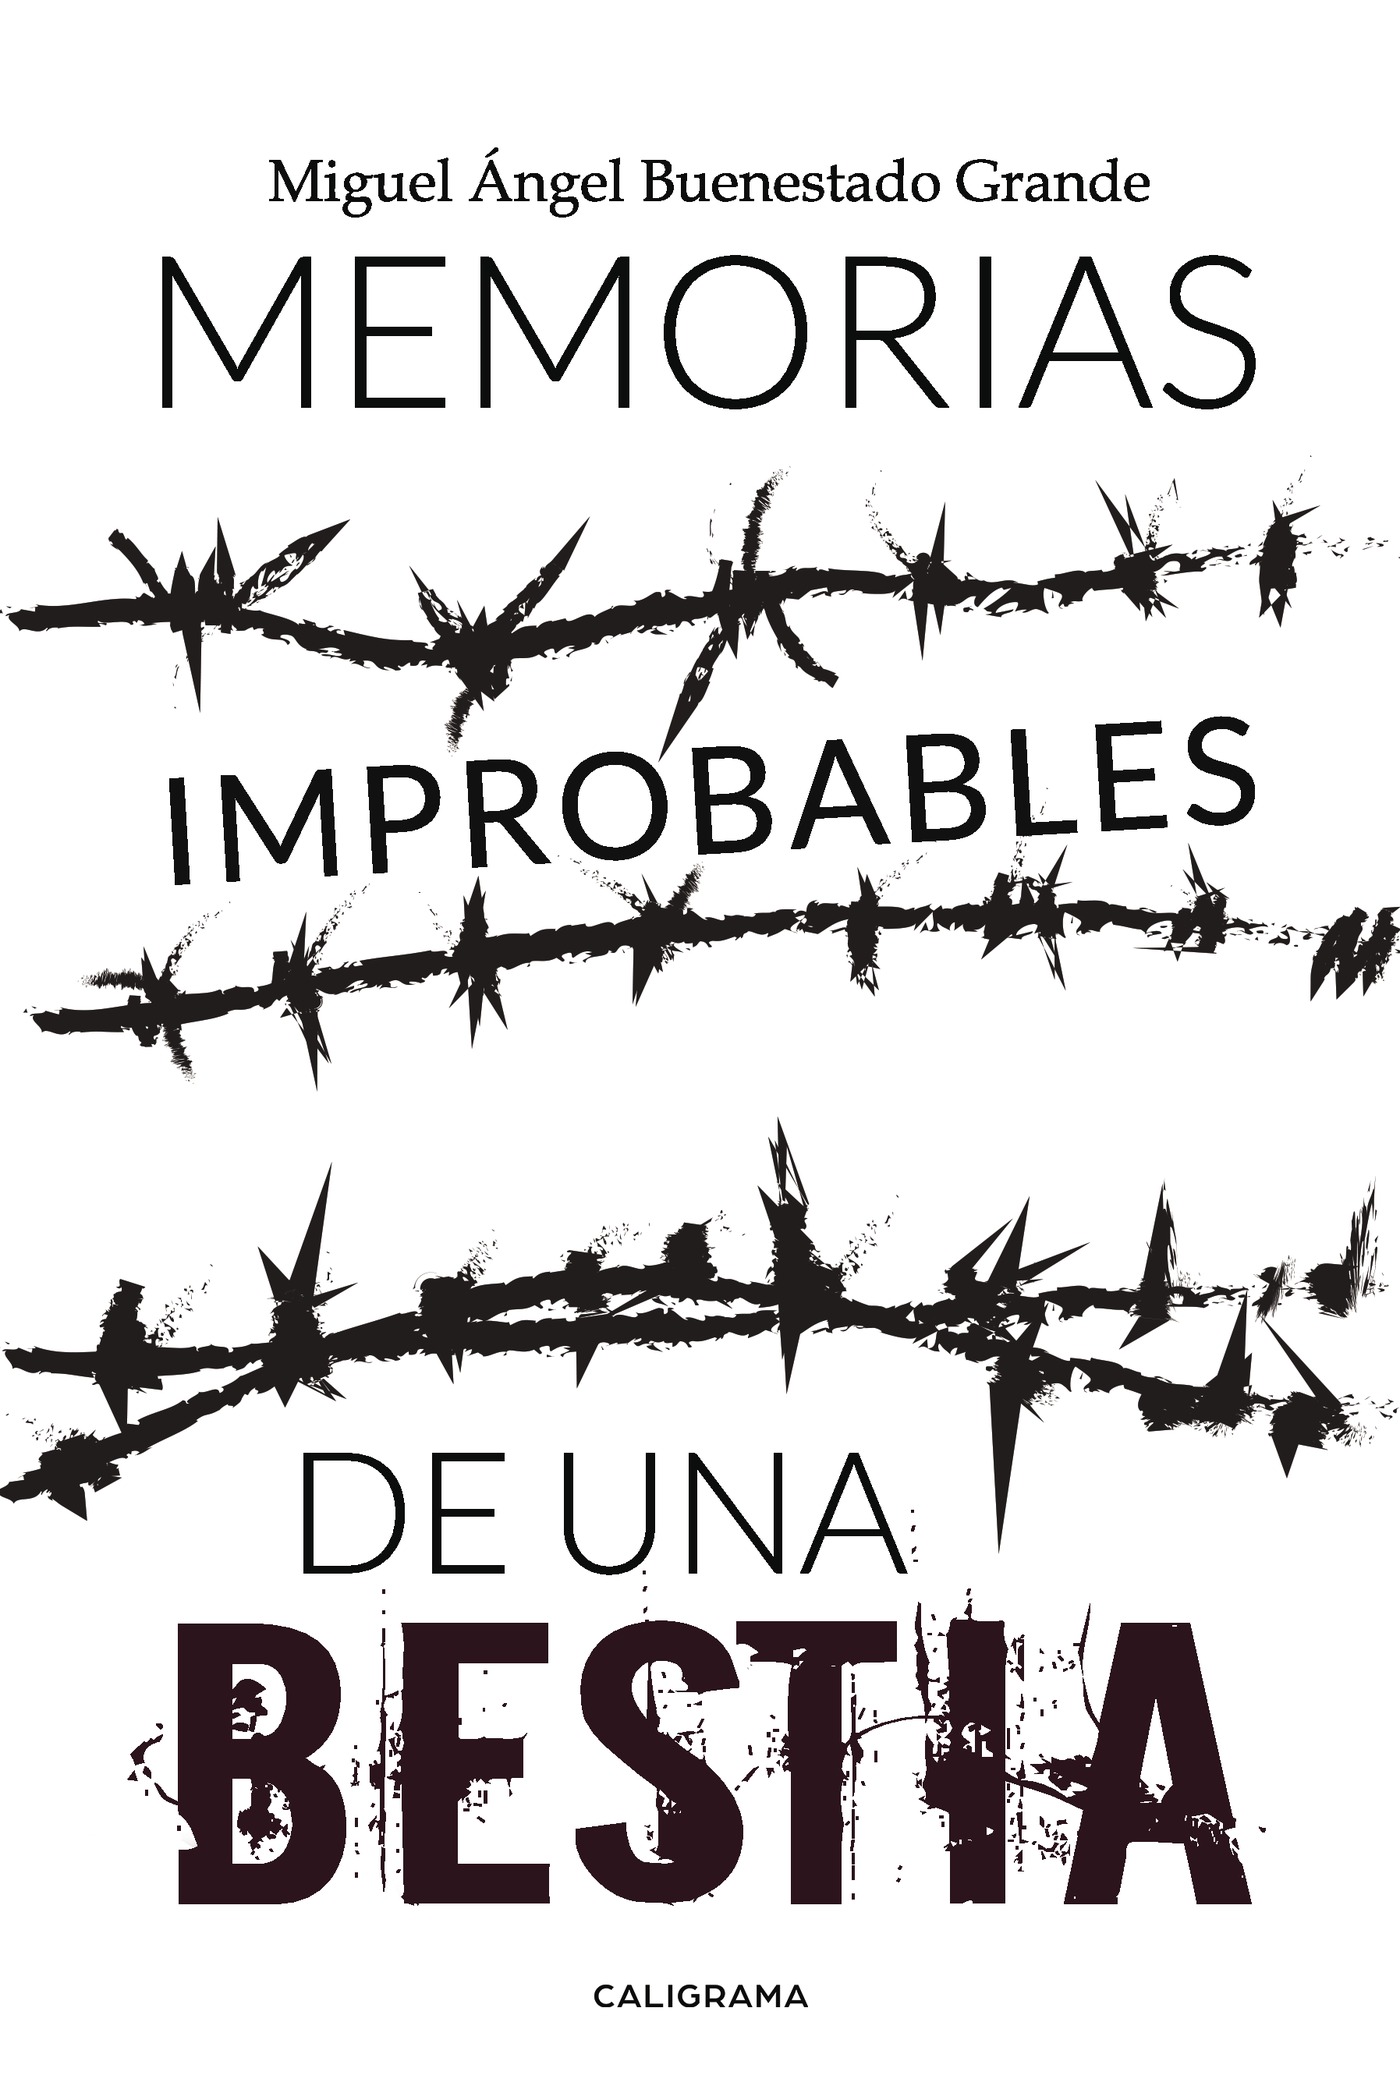 Memorias improbables de una bestia Primera edición Febrero 2018 ISBN - photo 1